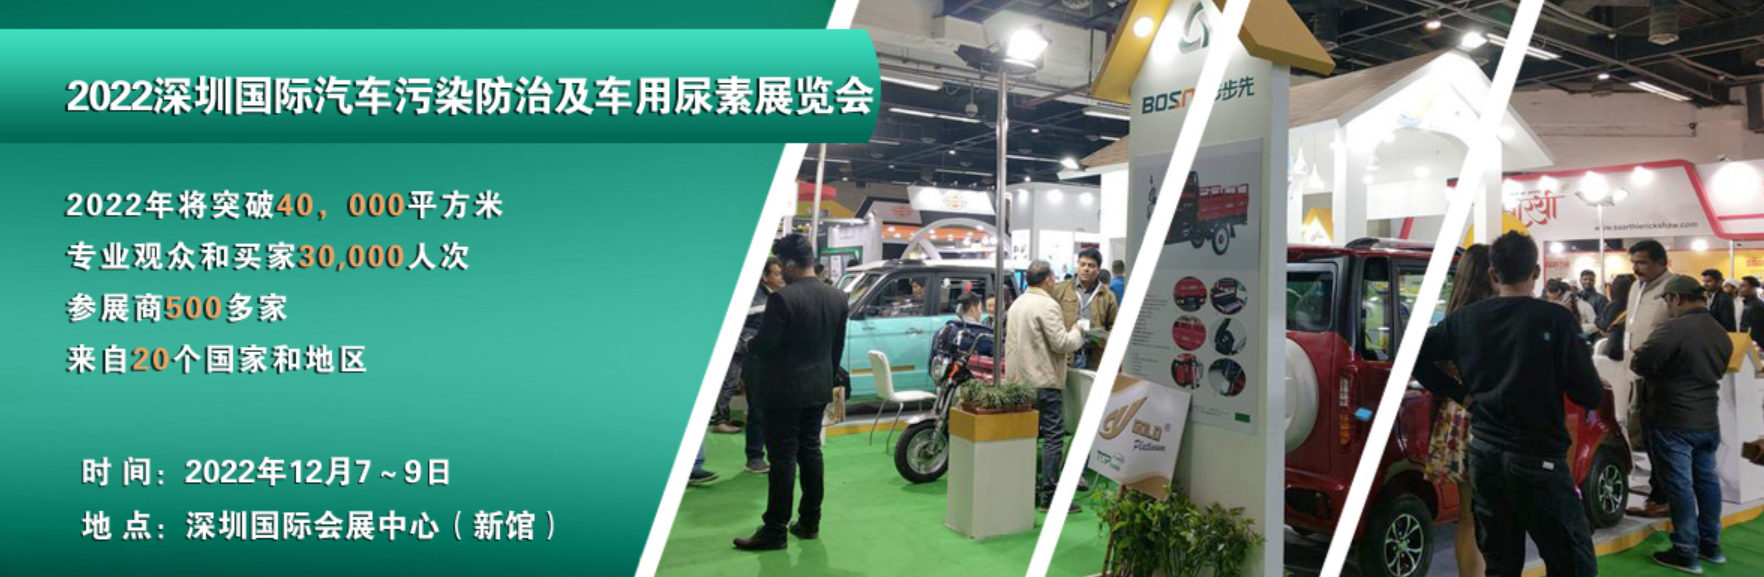 2022深圳国际汽车污染防治及车用尿素展览会|发动机管理系统展览会